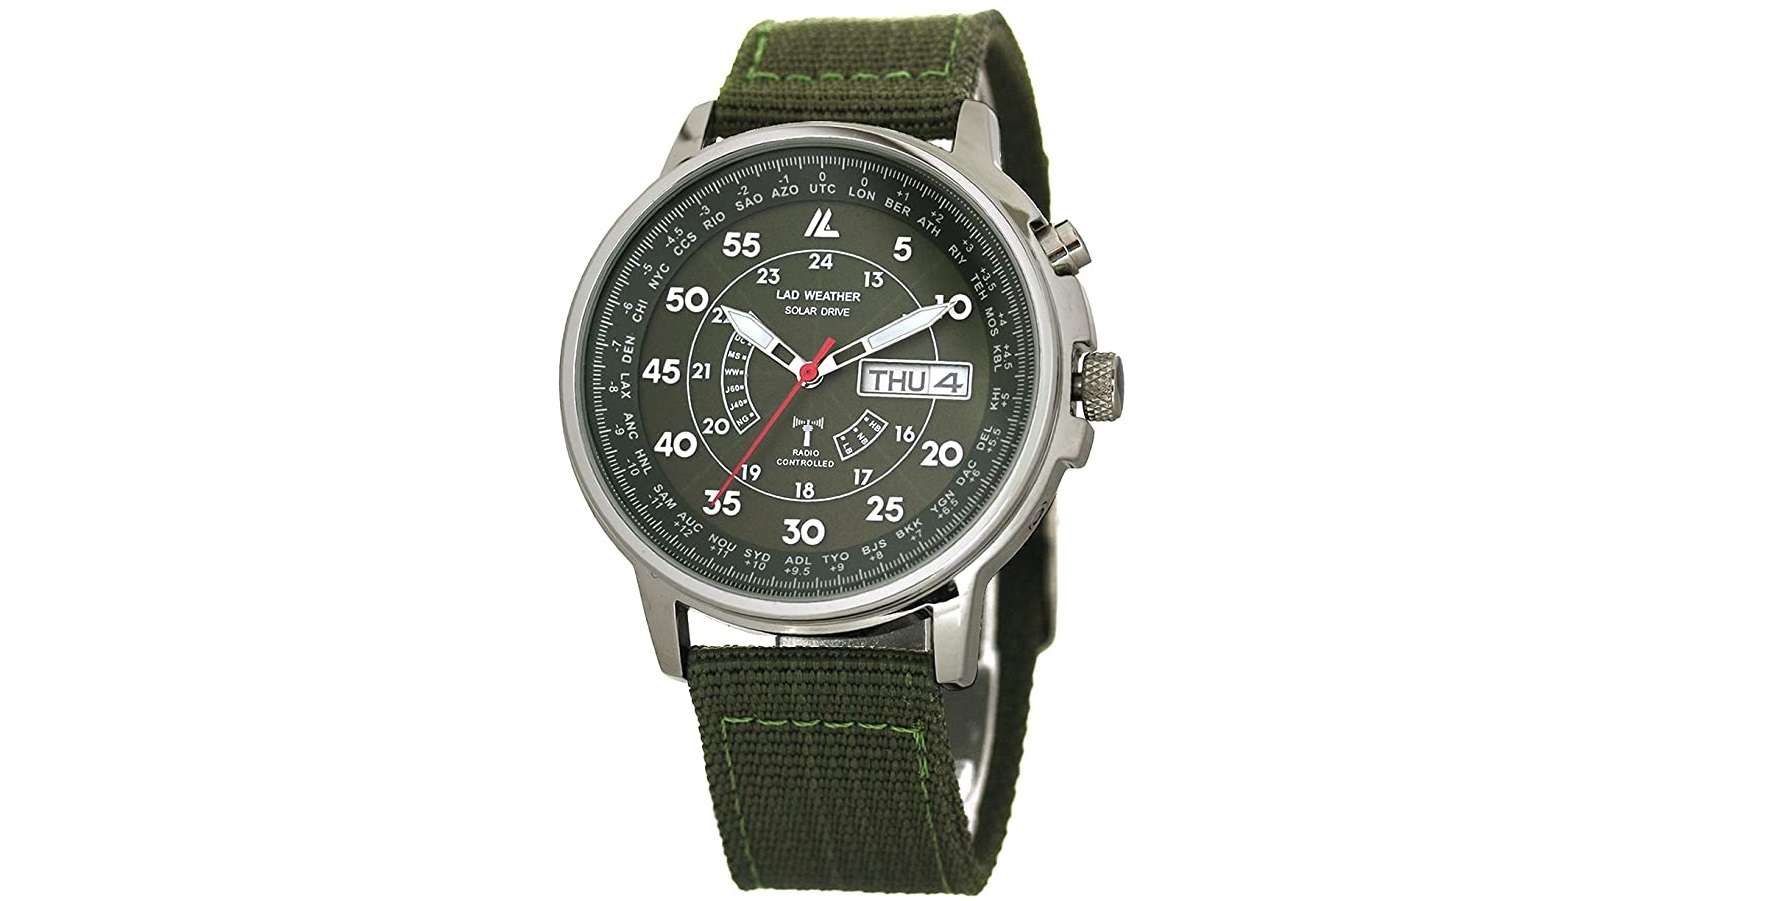 「3万円引きってマジか...」タイメックス、カシオ...メンズ腕時計が最大75％OFFの衝撃価格に！【Amazonセール】 61SNh68NTGL._AC_SX679_.jpg